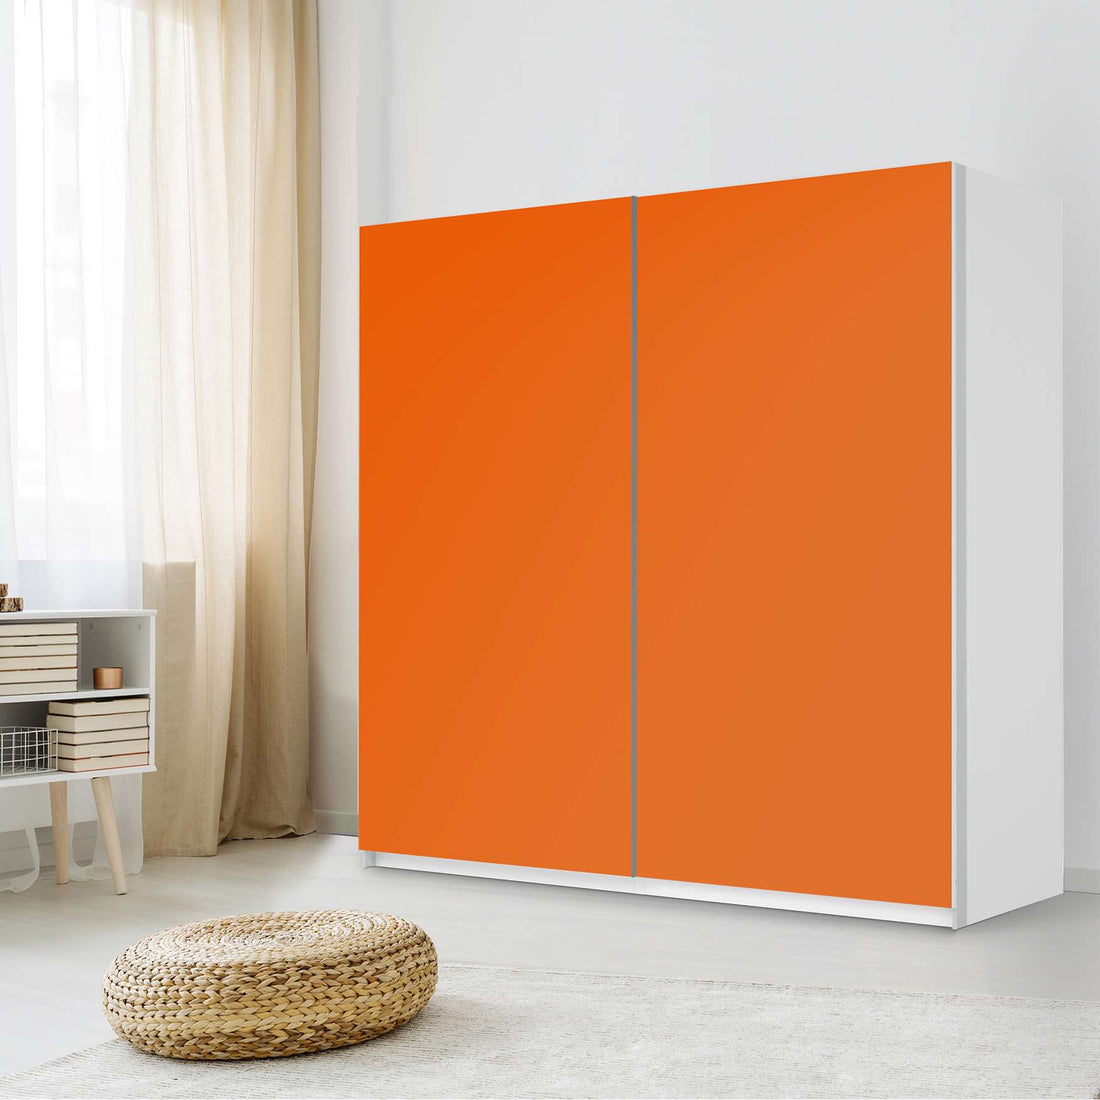 Möbel Klebefolie Orange Dark - IKEA Pax Schrank 201 cm Höhe - Schiebetür - Schlafzimmer